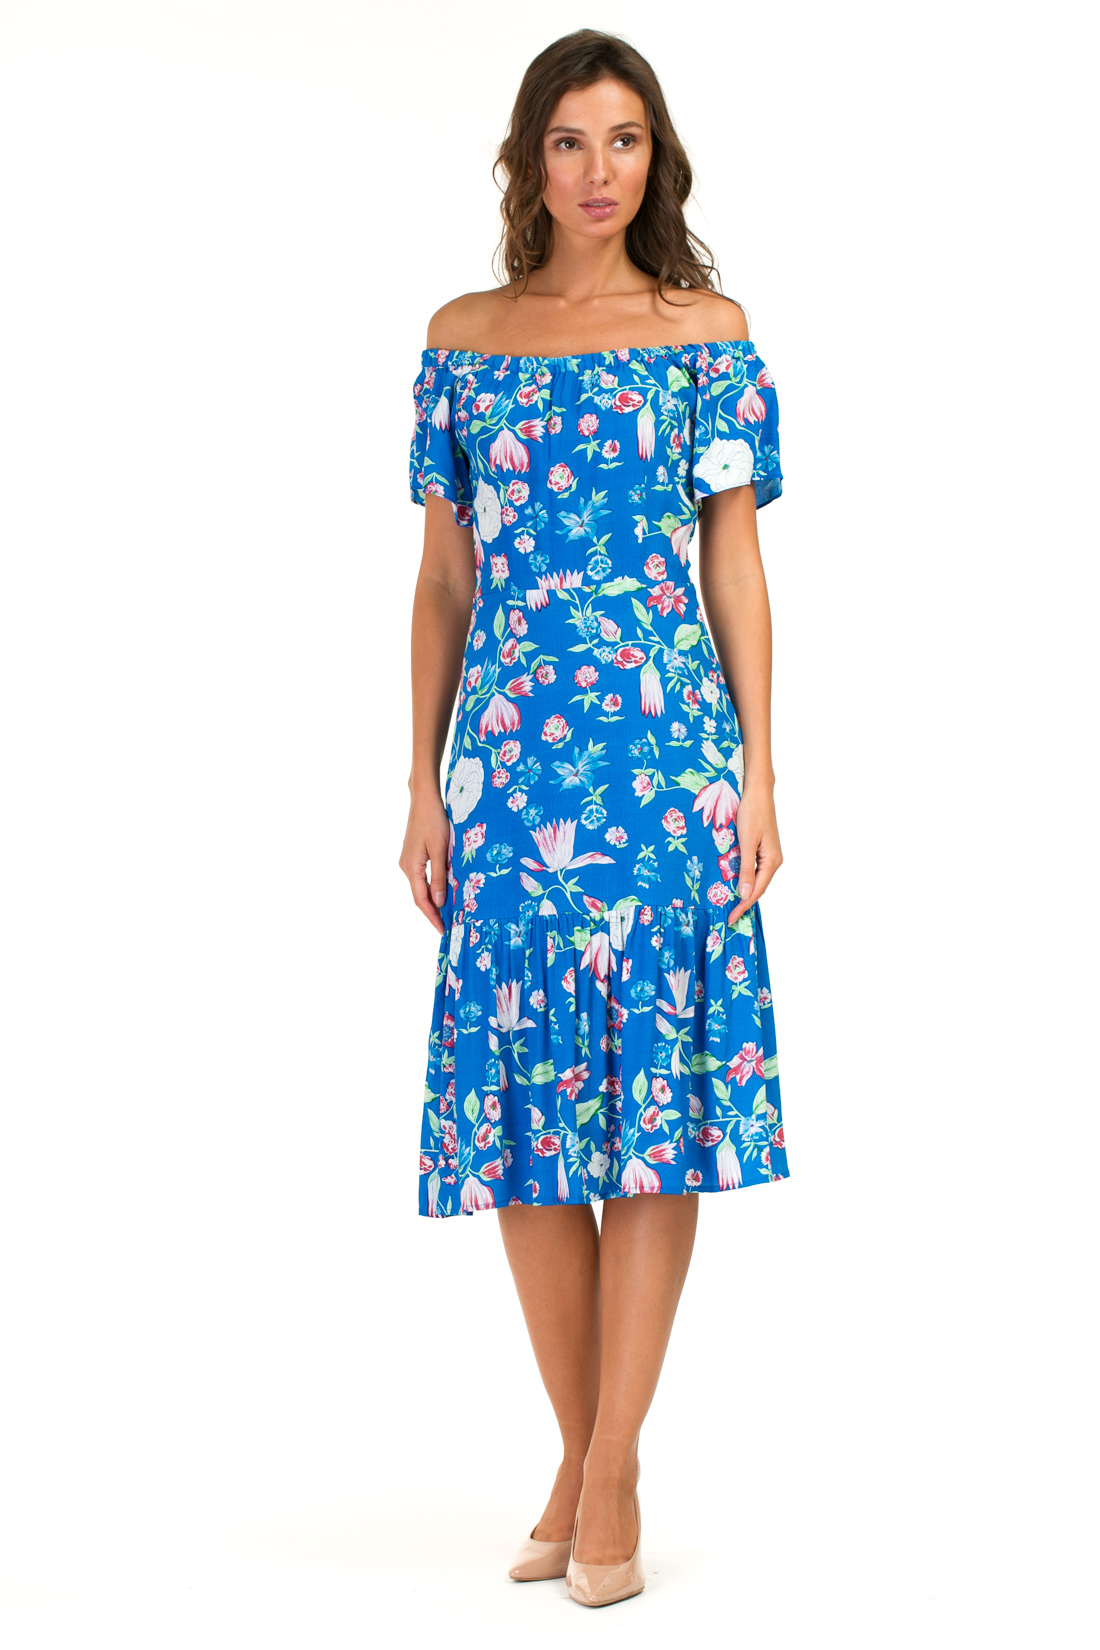 Платье с оборкой и открытыми плечами (арт. baon B457055), размер XS, цвет синий Платье с оборкой и открытыми плечами (арт. baon B457055) - фото 1